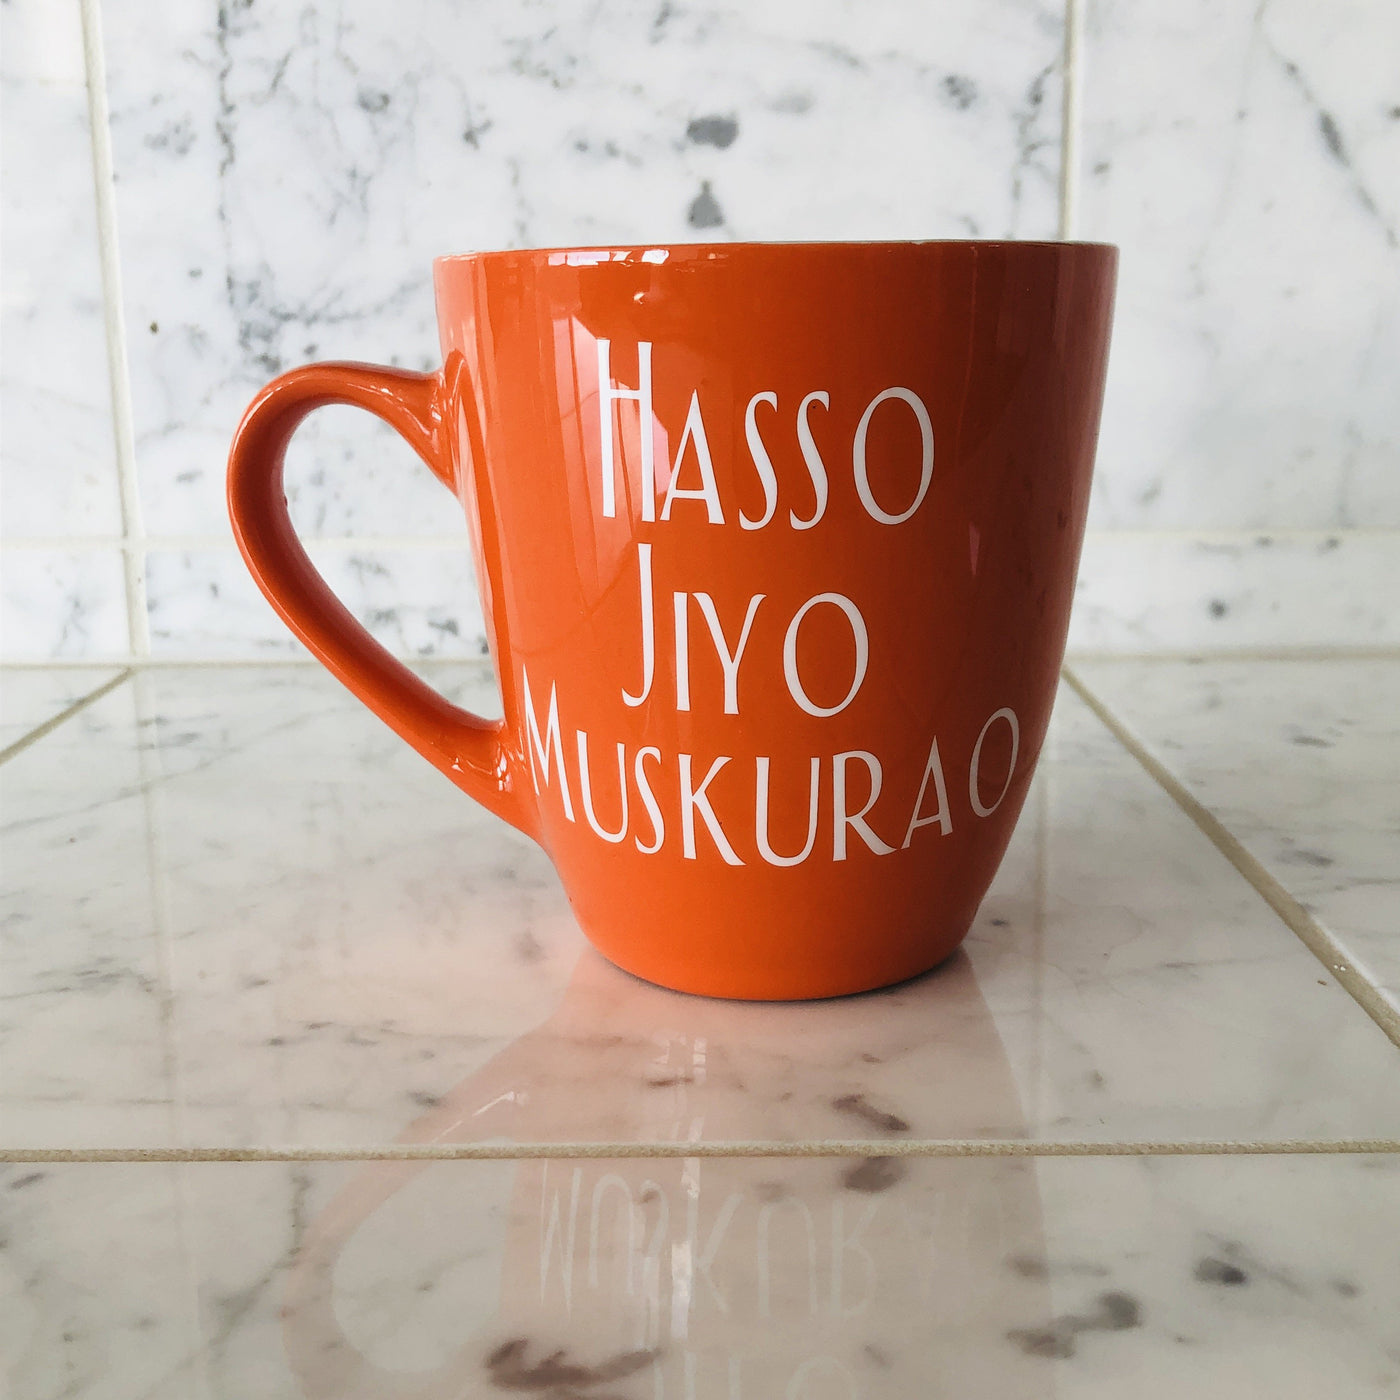 Hasso Jiyo Muskurao Mug